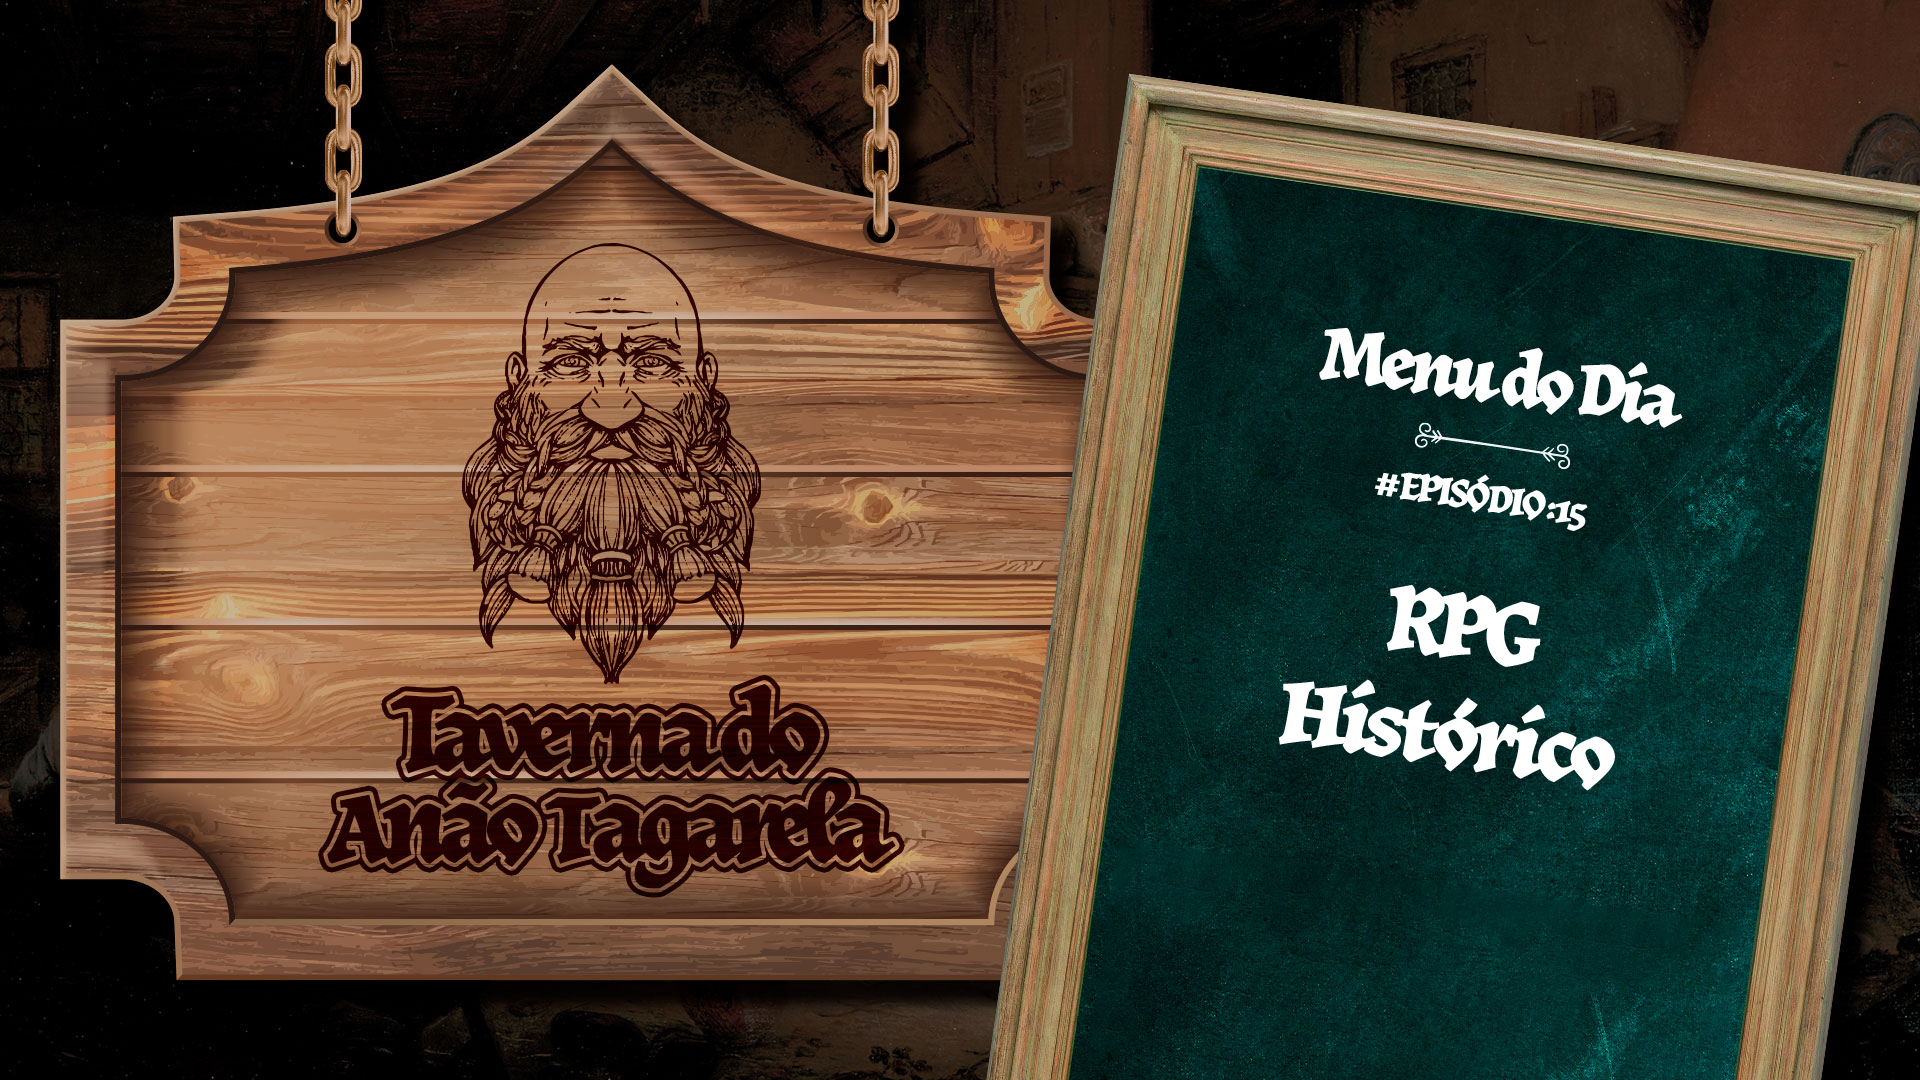 RPG Histórico - Taverna do Anão Tagarela #15